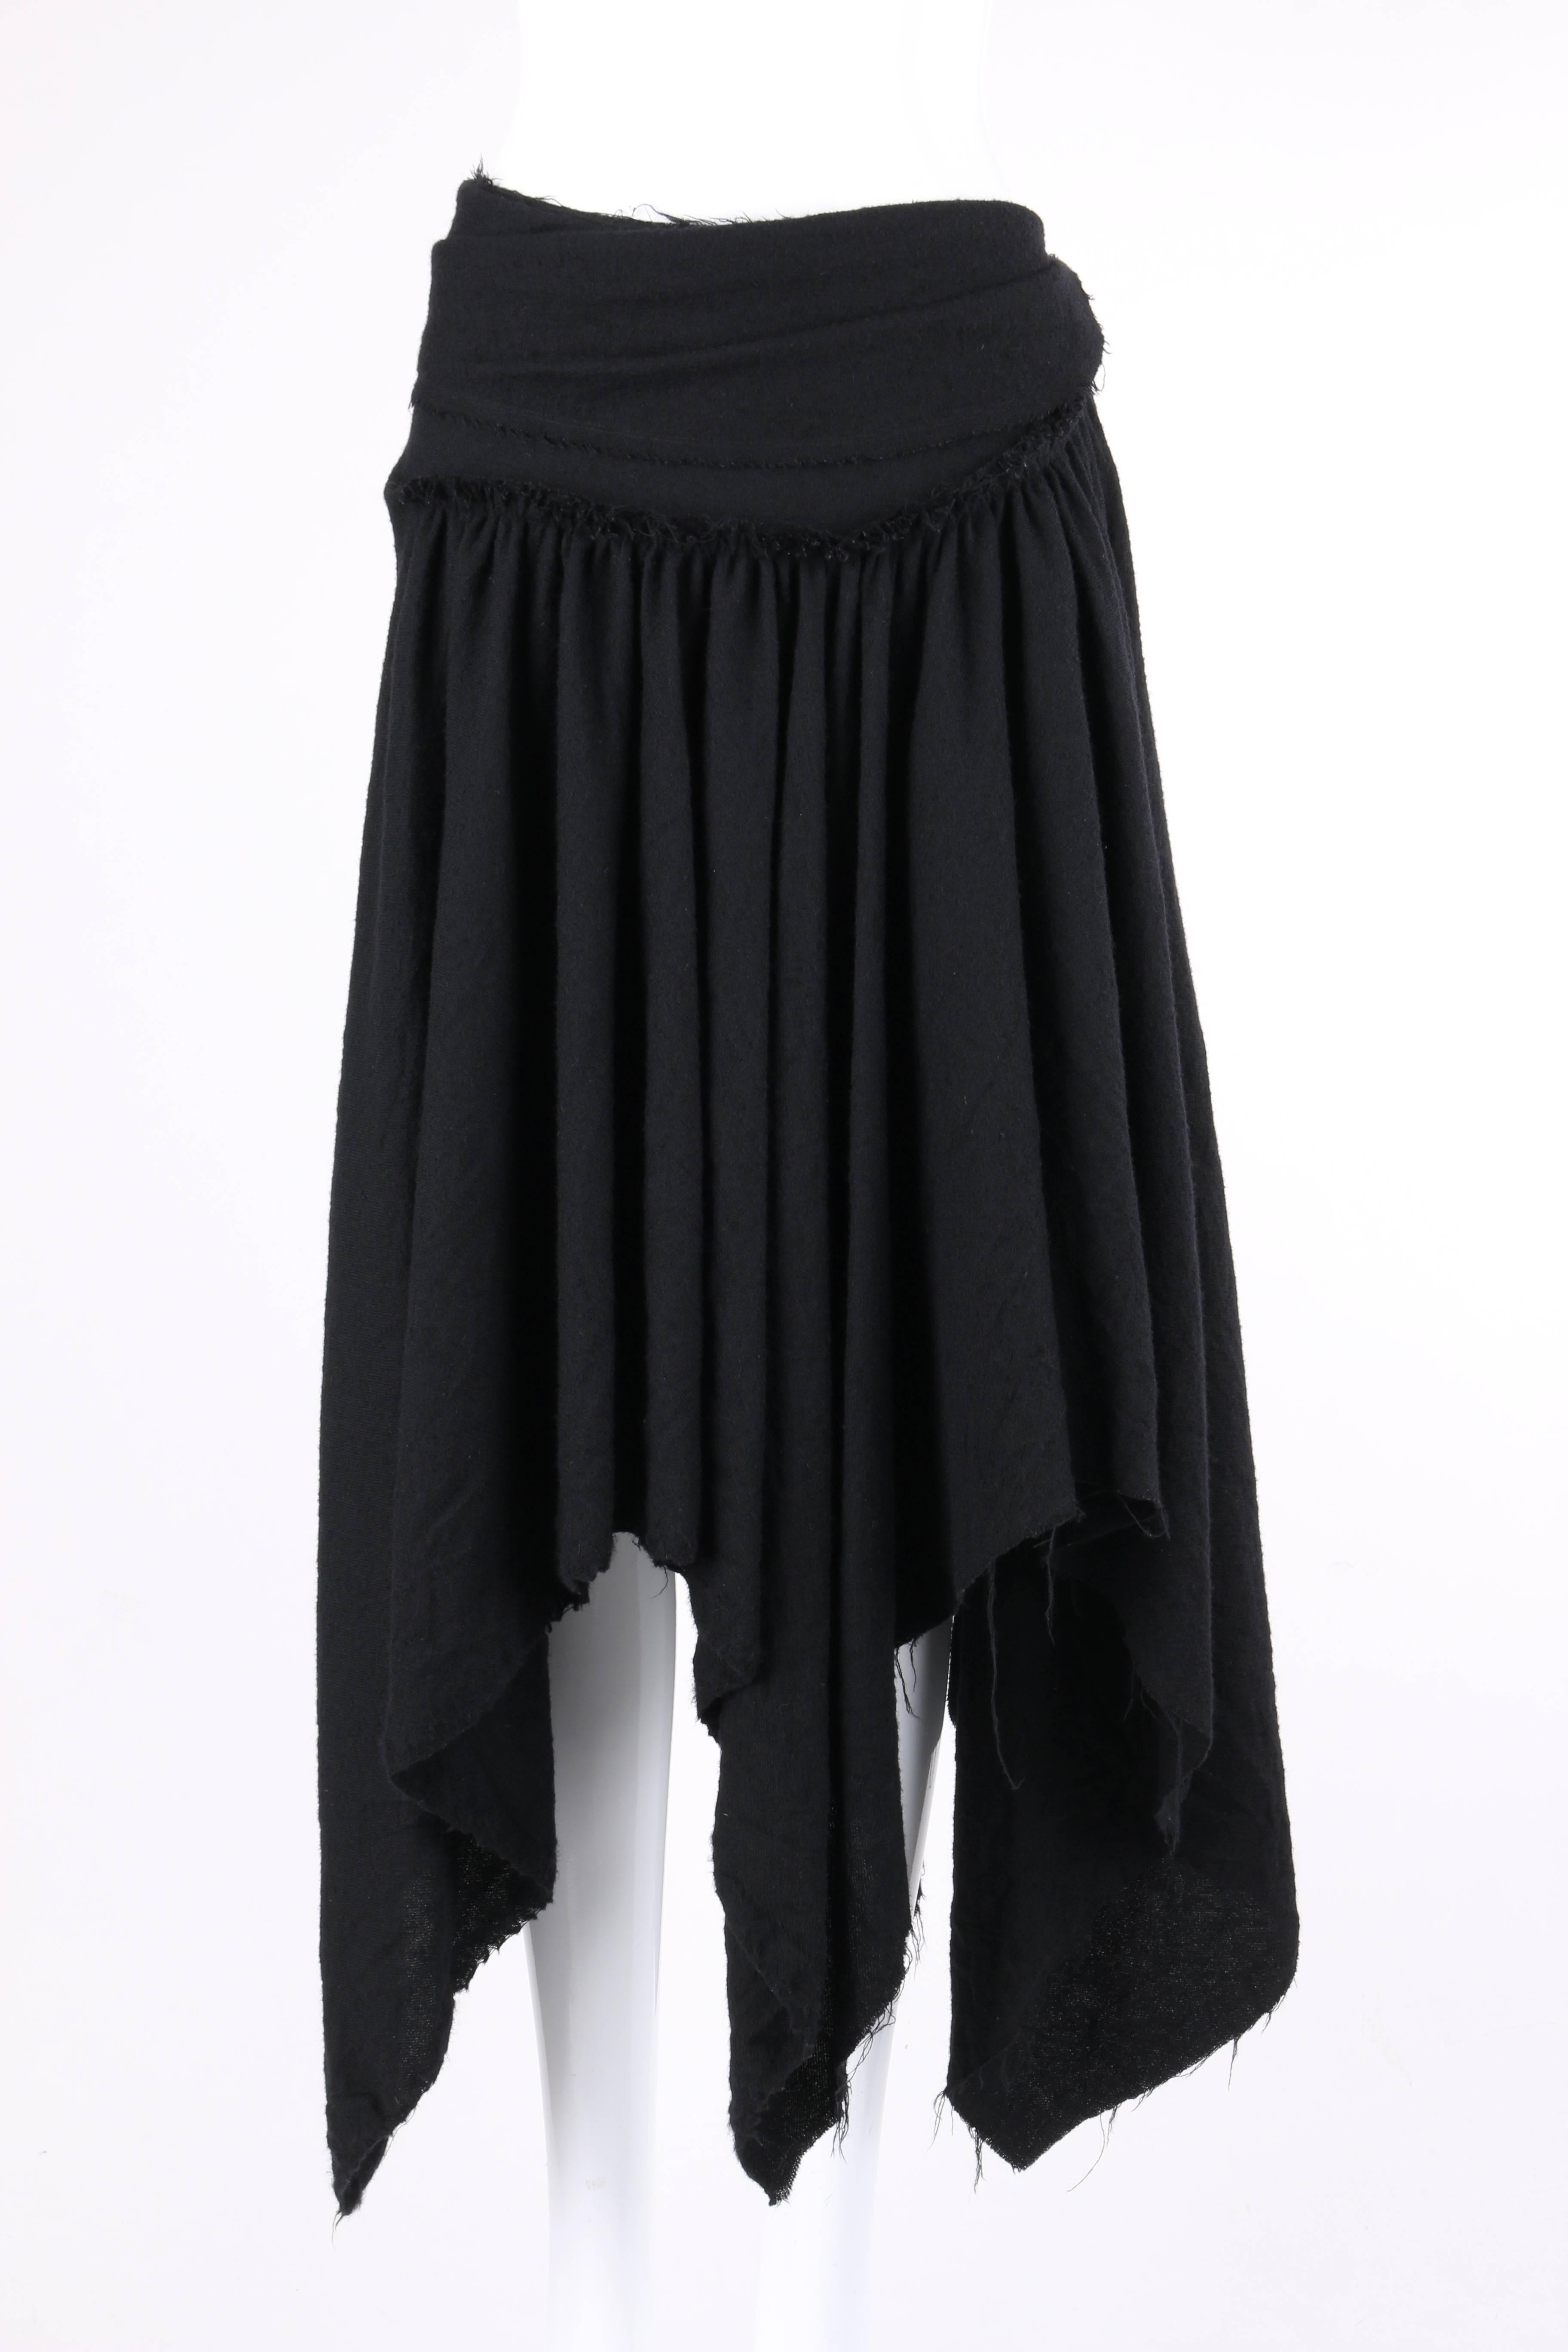 COMME DES GARCONS A/W 2003 Black Wool Handkerchief Hem Convertible Dress / Skirt 1